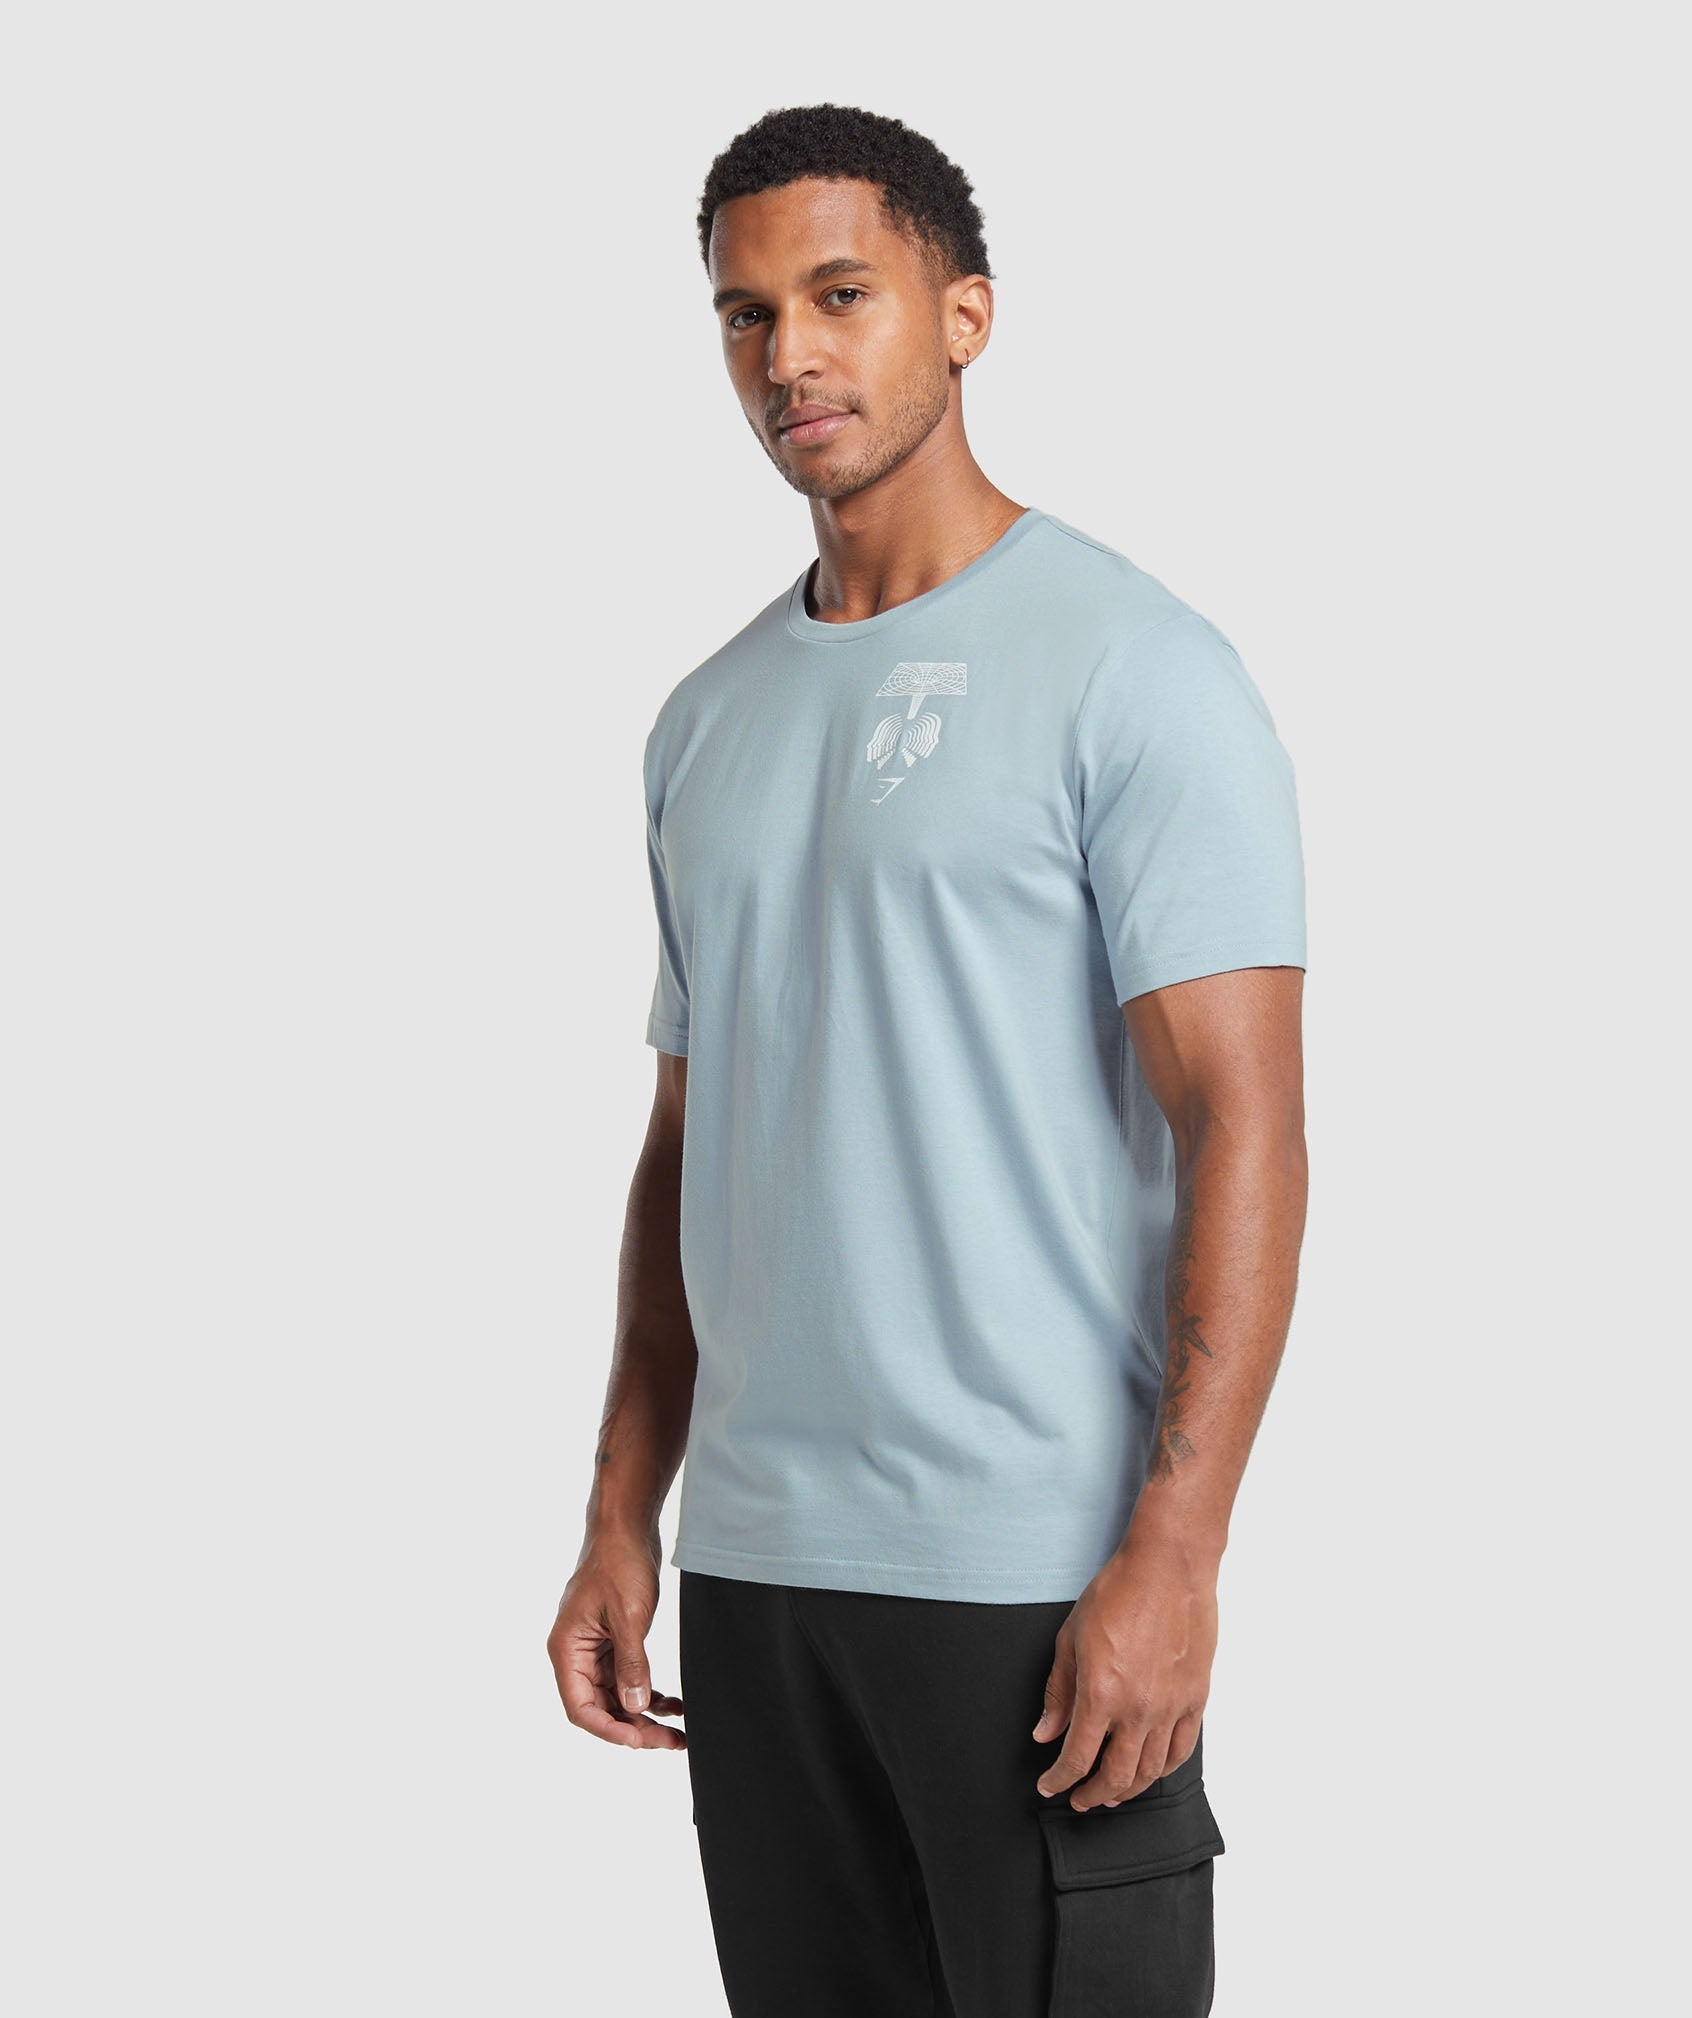 Hybrid Wellness T-Shirt in Salt Blue - view 3